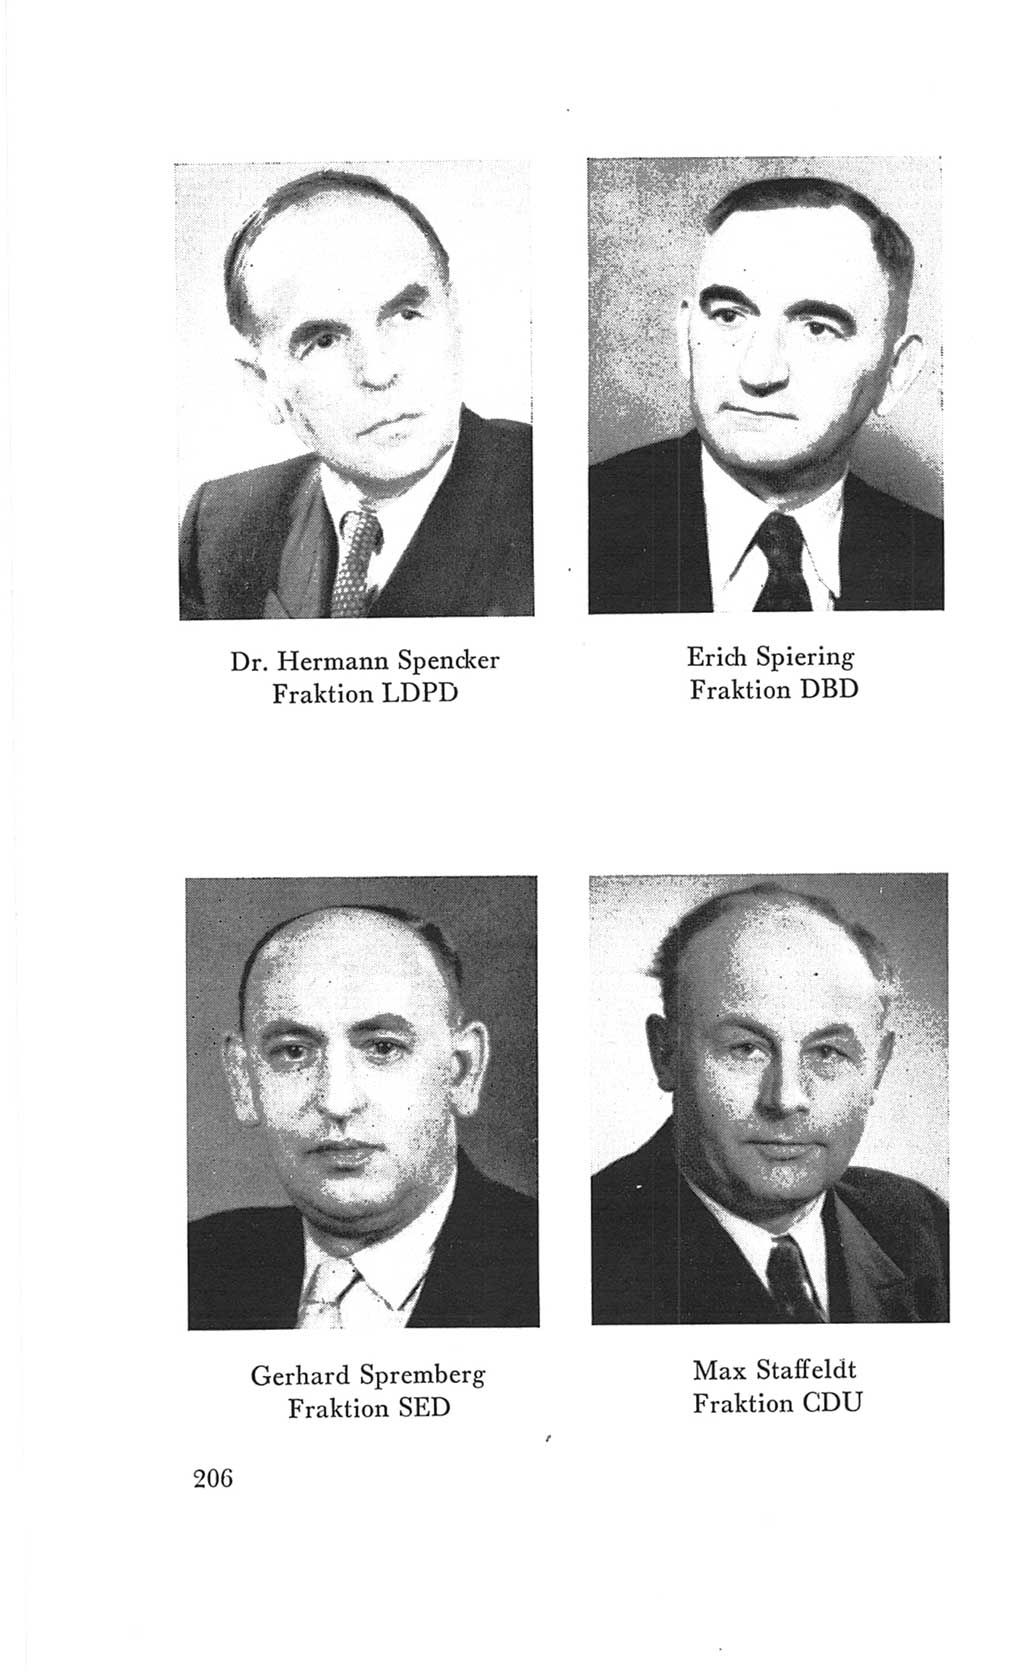 Handbuch der Volkskammer (VK) der Deutschen Demokratischen Republik (DDR), 3. Wahlperiode 1958-1963, Seite 206 (Hdb. VK. DDR 3. WP. 1958-1963, S. 206)